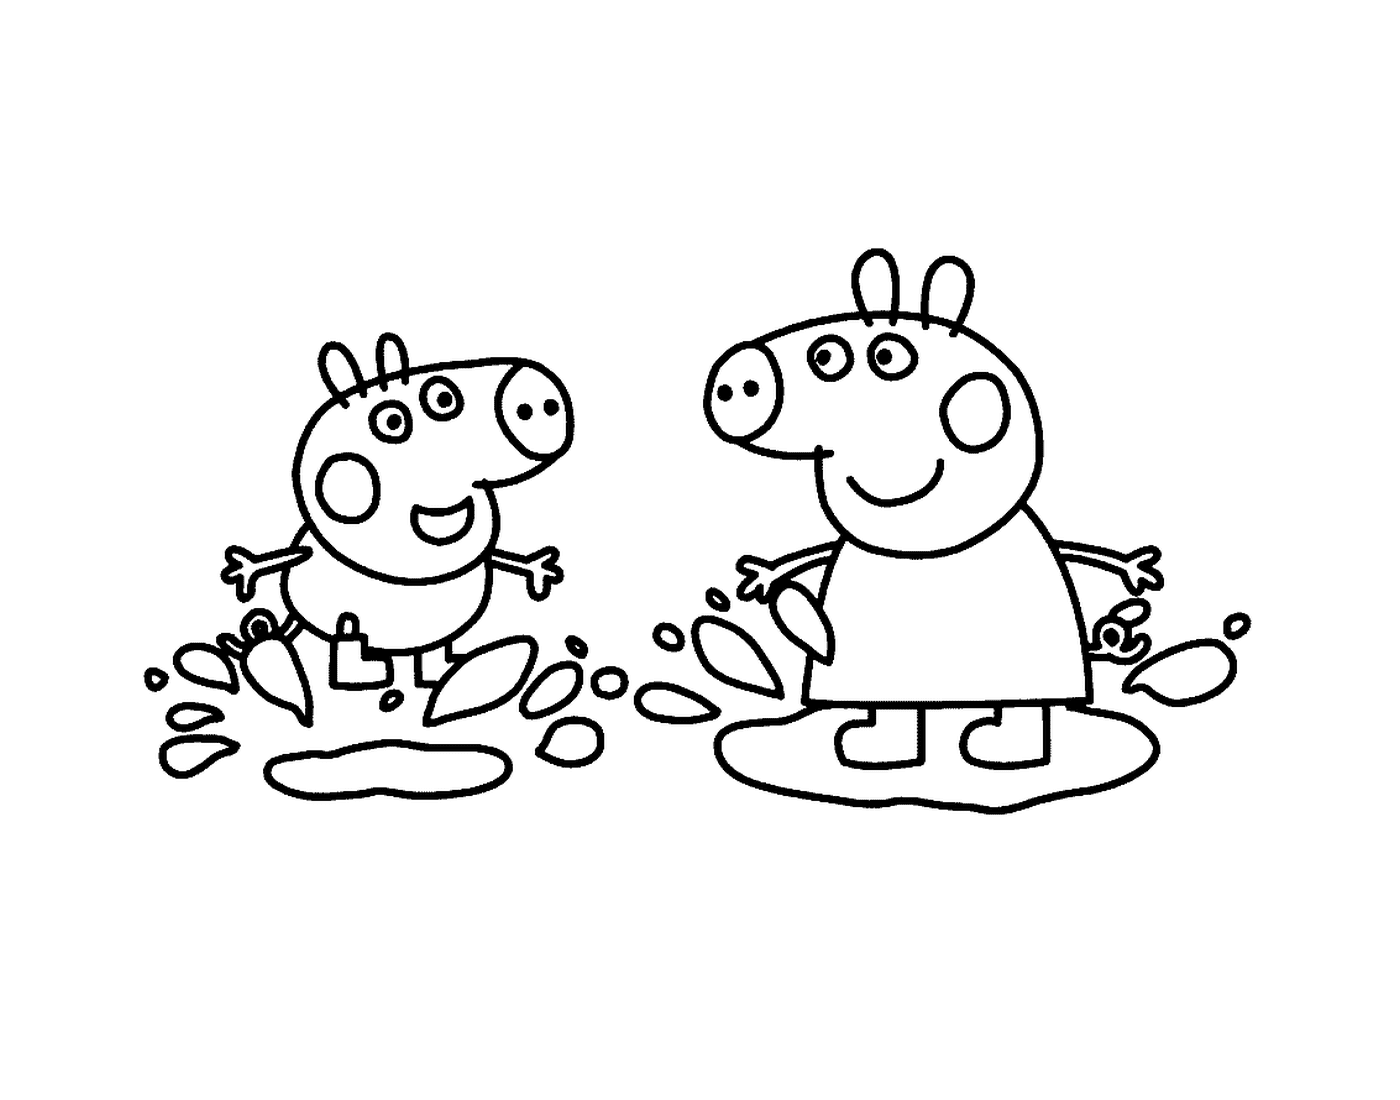   Un couple de personnages Peppa Pig côte à côte 